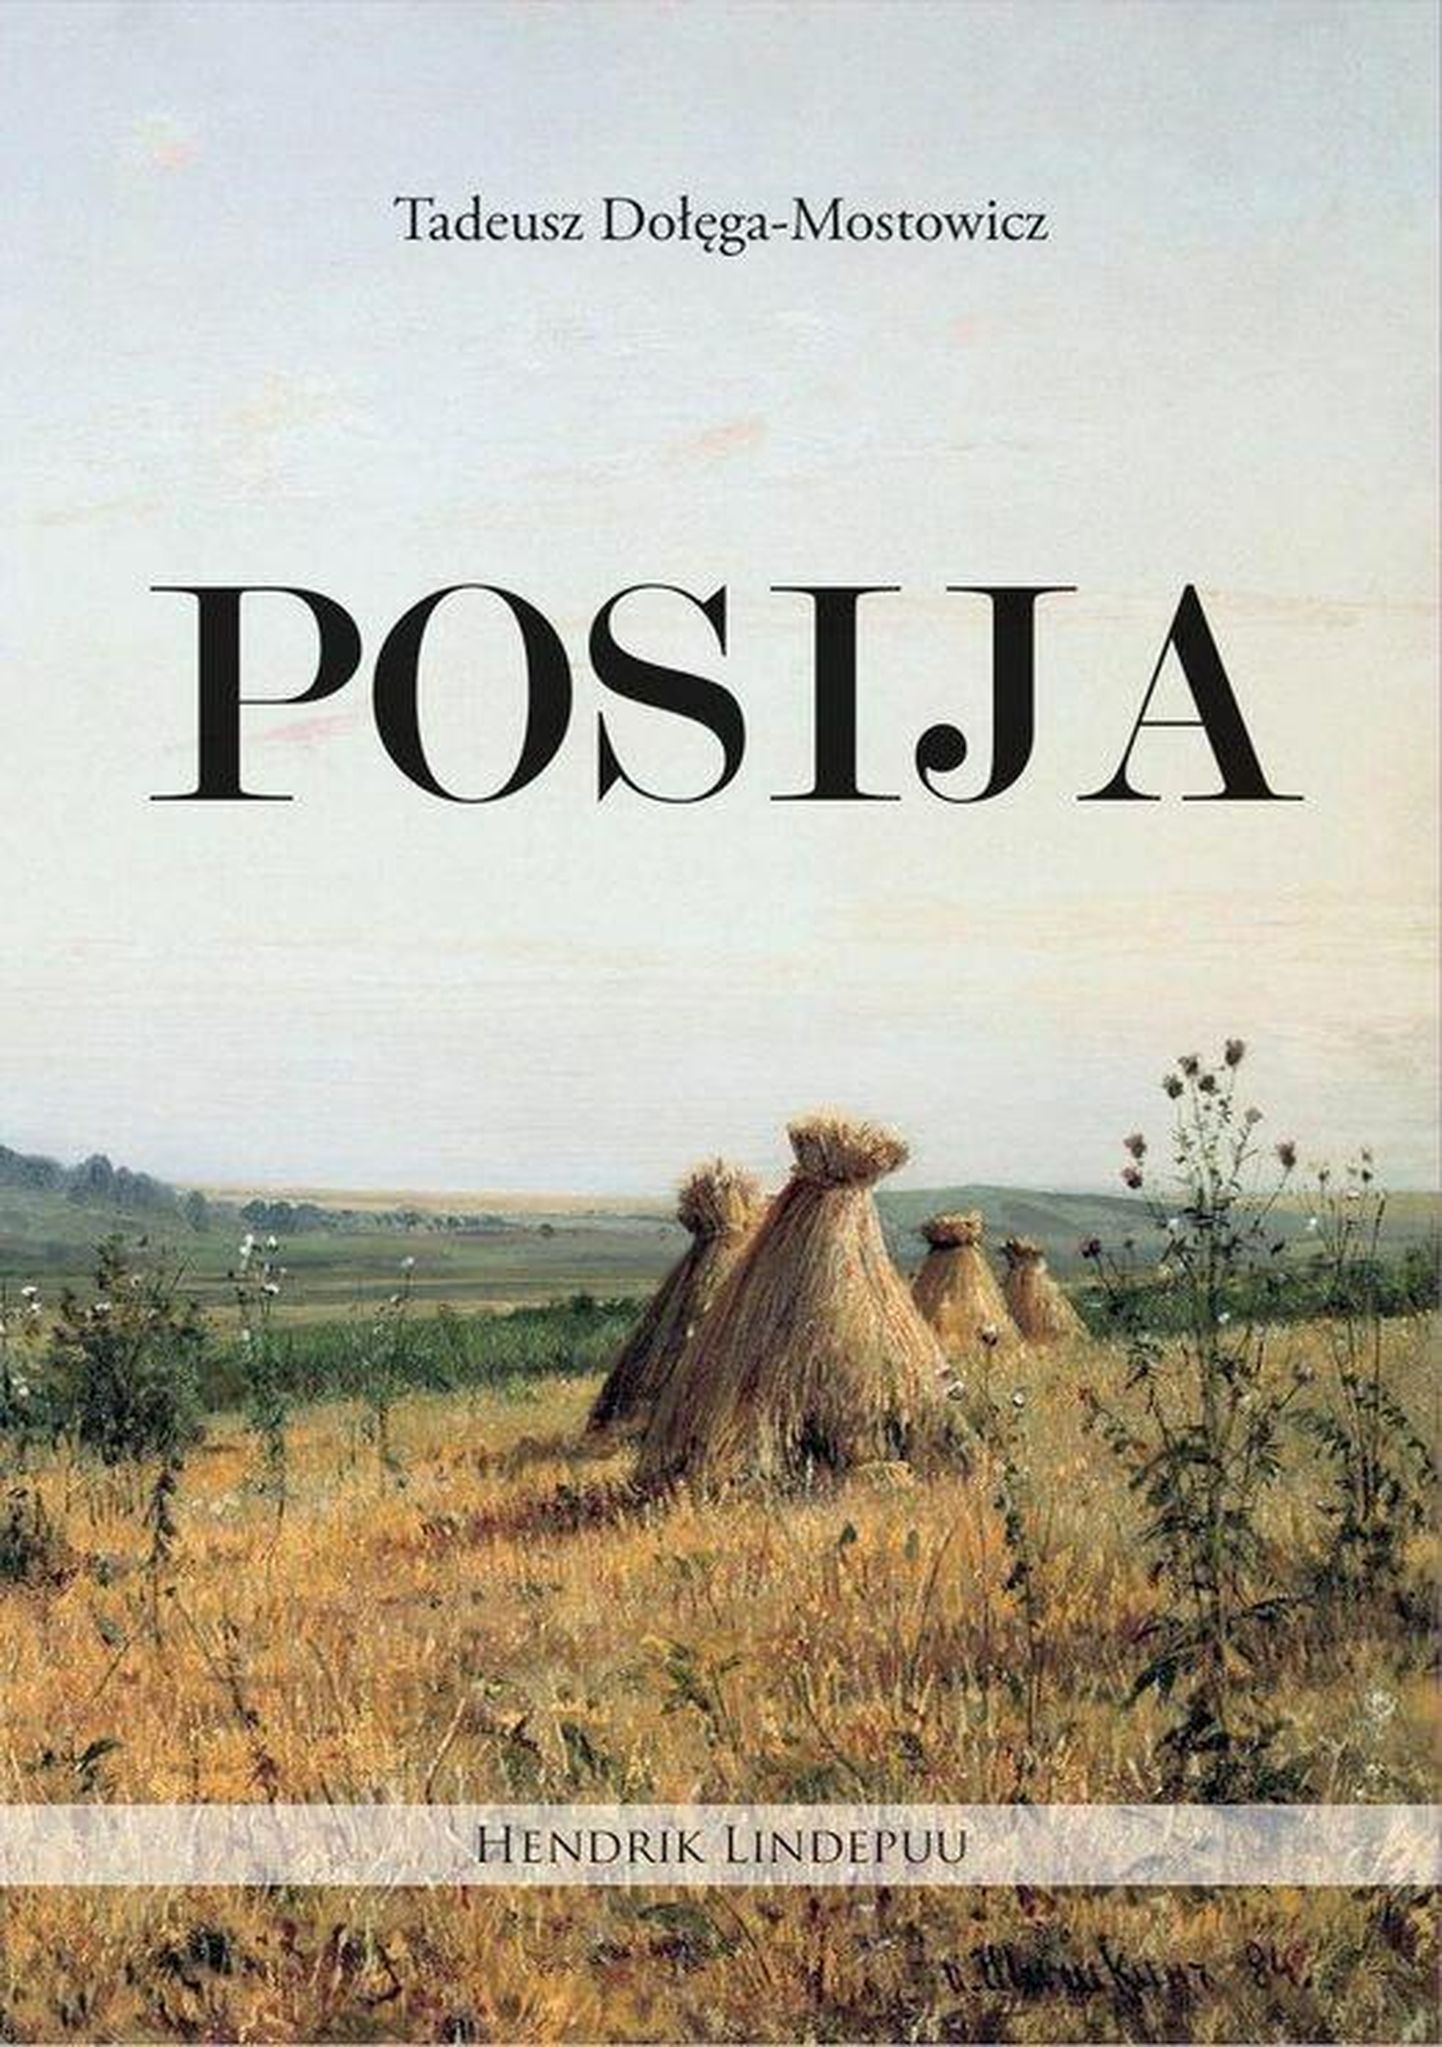 Tadeusz Dołęga-Mostowicz "Posija".